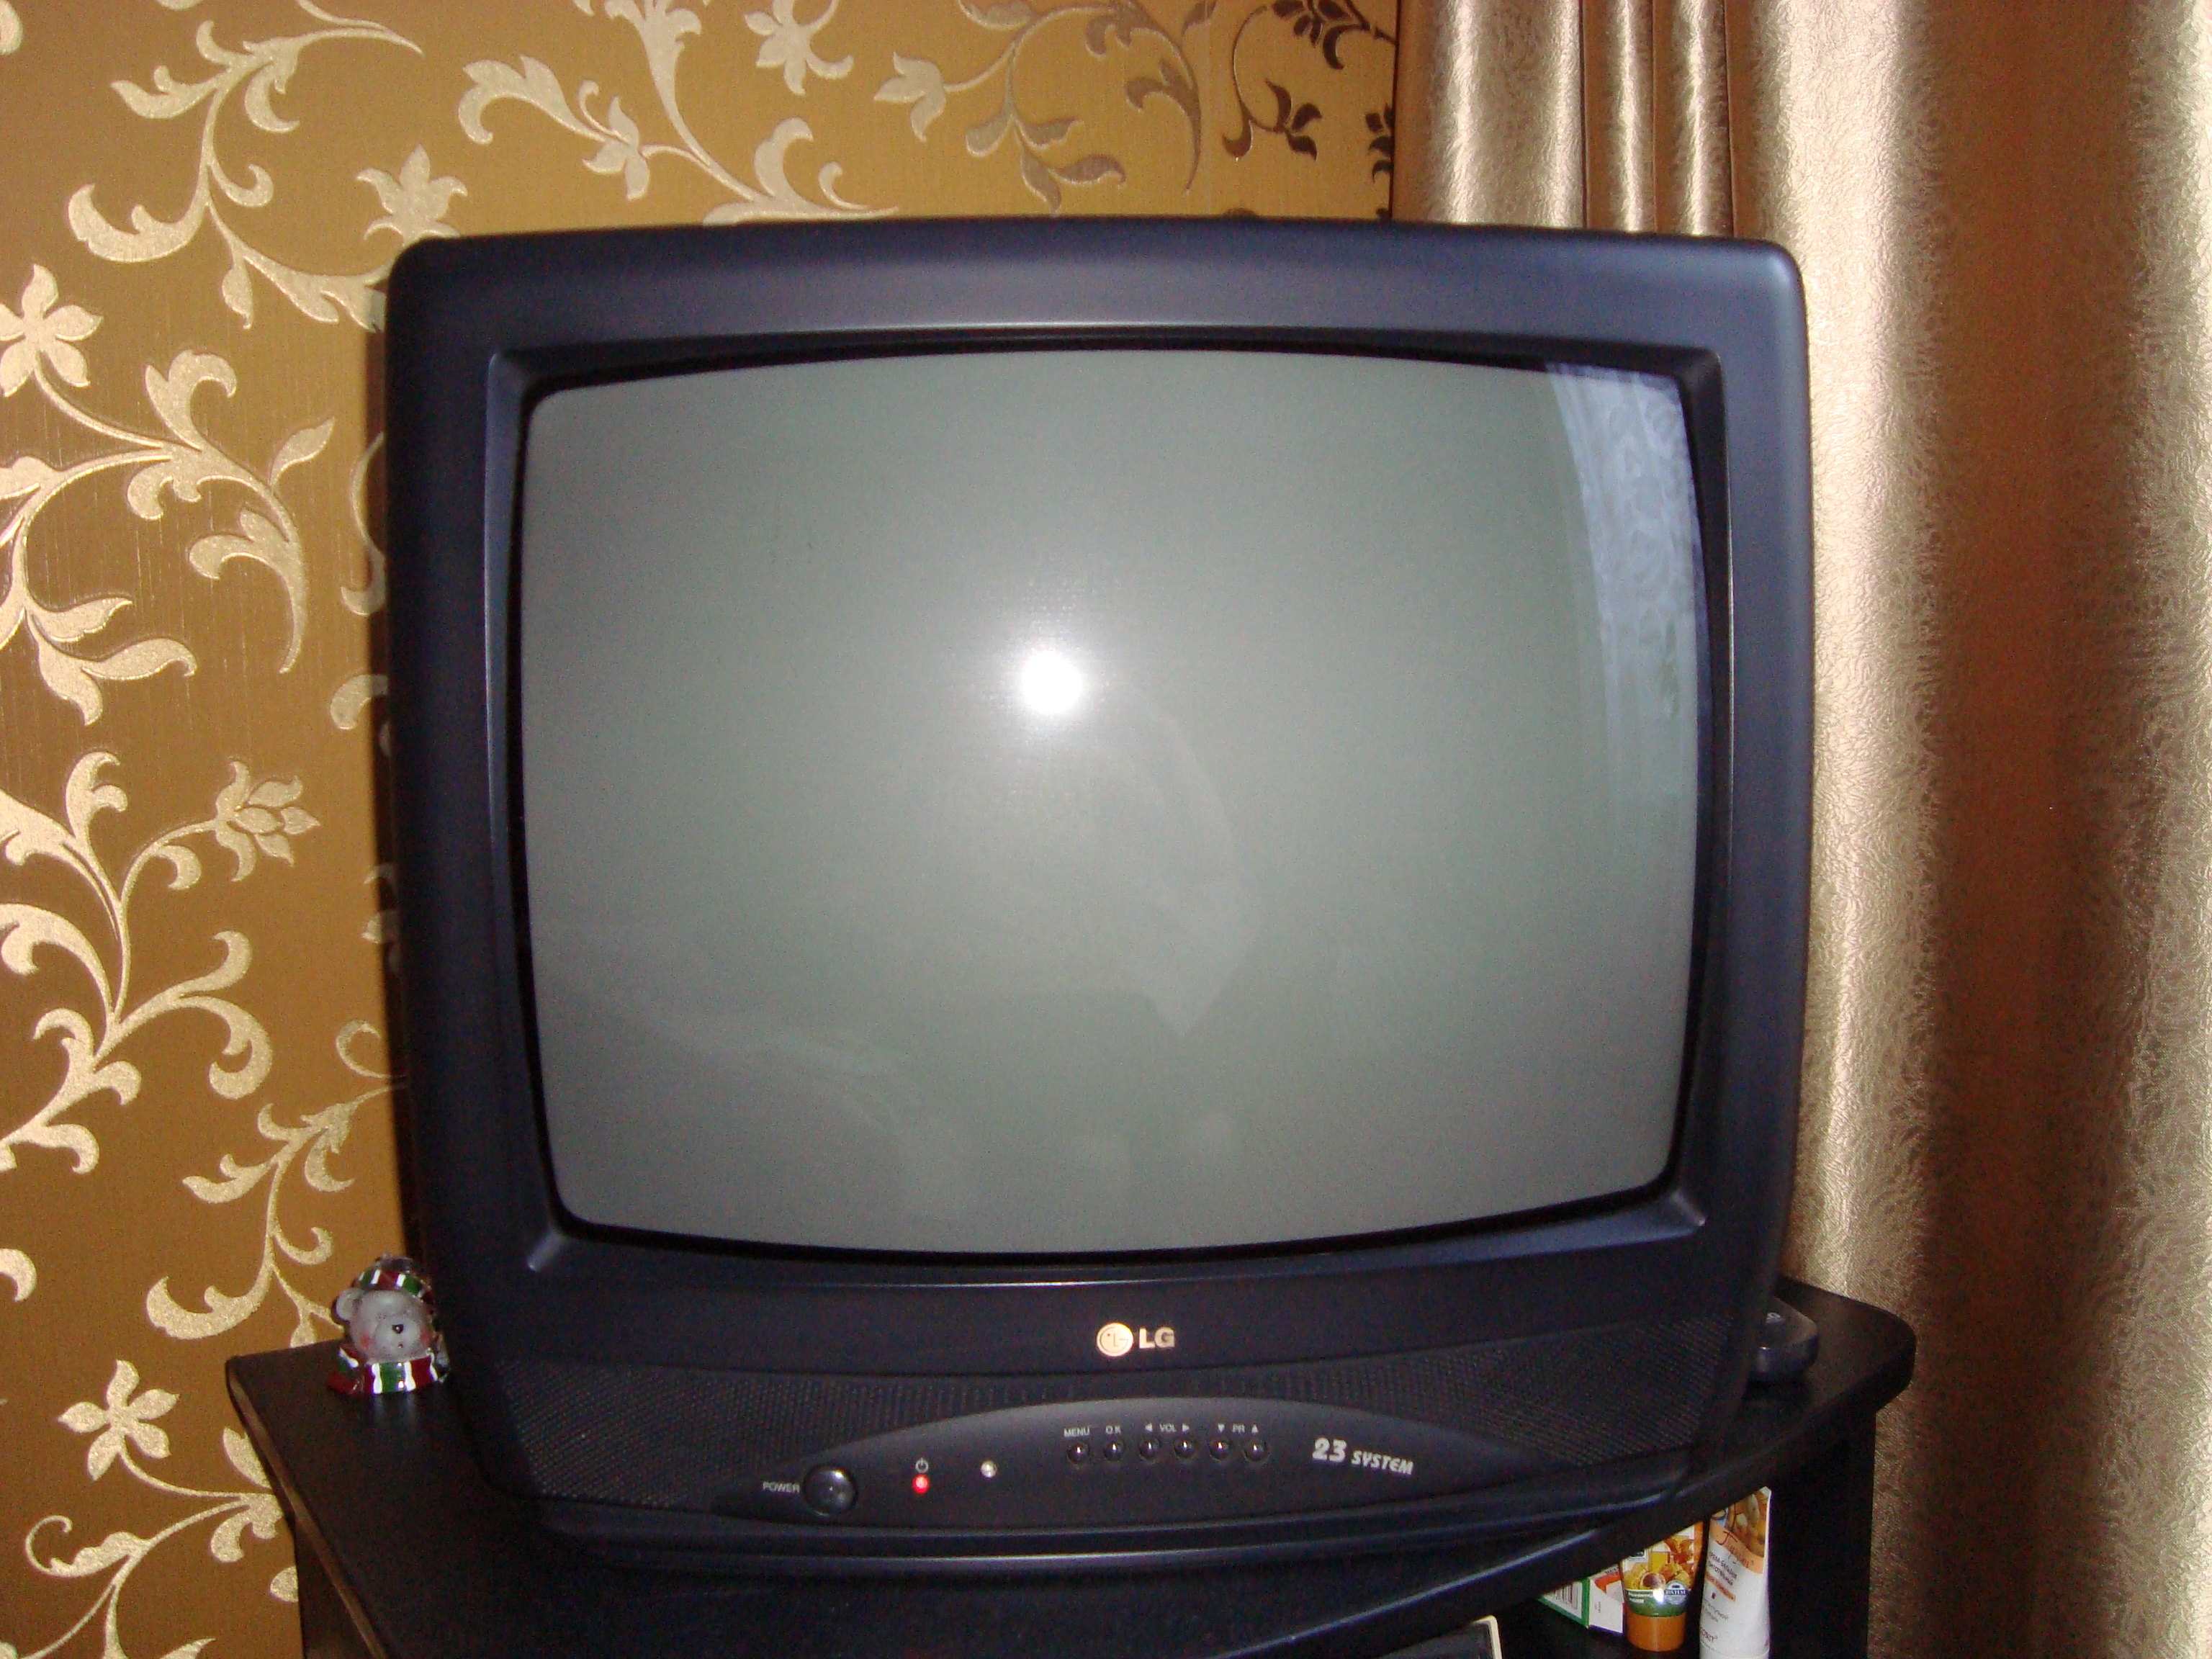 Авито екатеринбург телевизор. LG 21 дюйм кинескопный. Телевизор LG 21 дюйм кинескопный. Телевизор LG CF-21f39. LG CF 20f30.